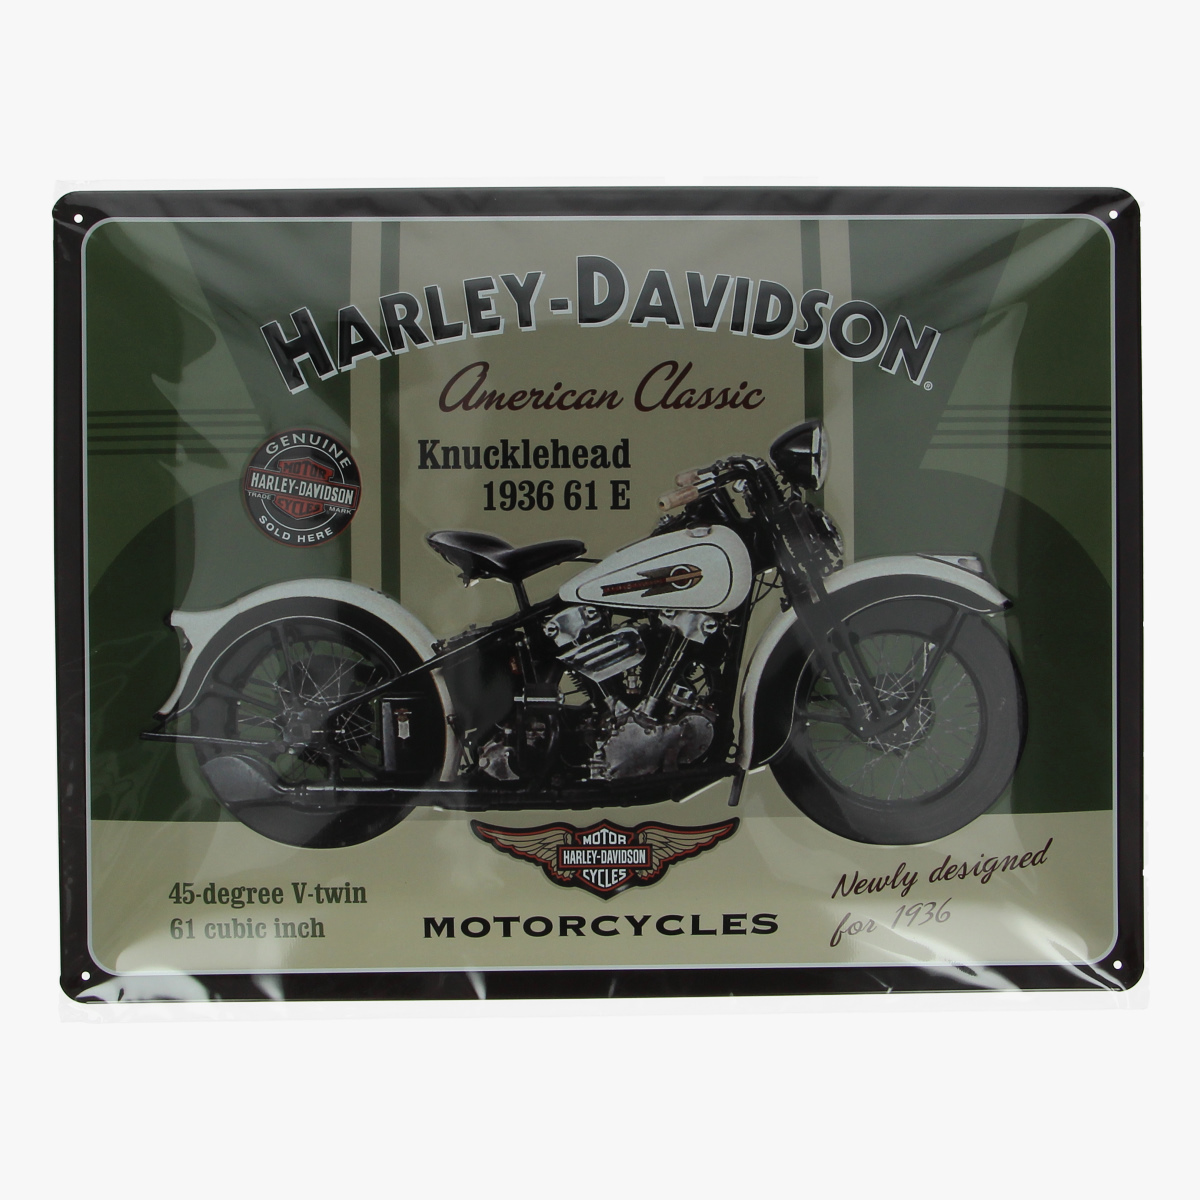 Afbeeldingen van blikken bordje Harley-Davidson repro geseald